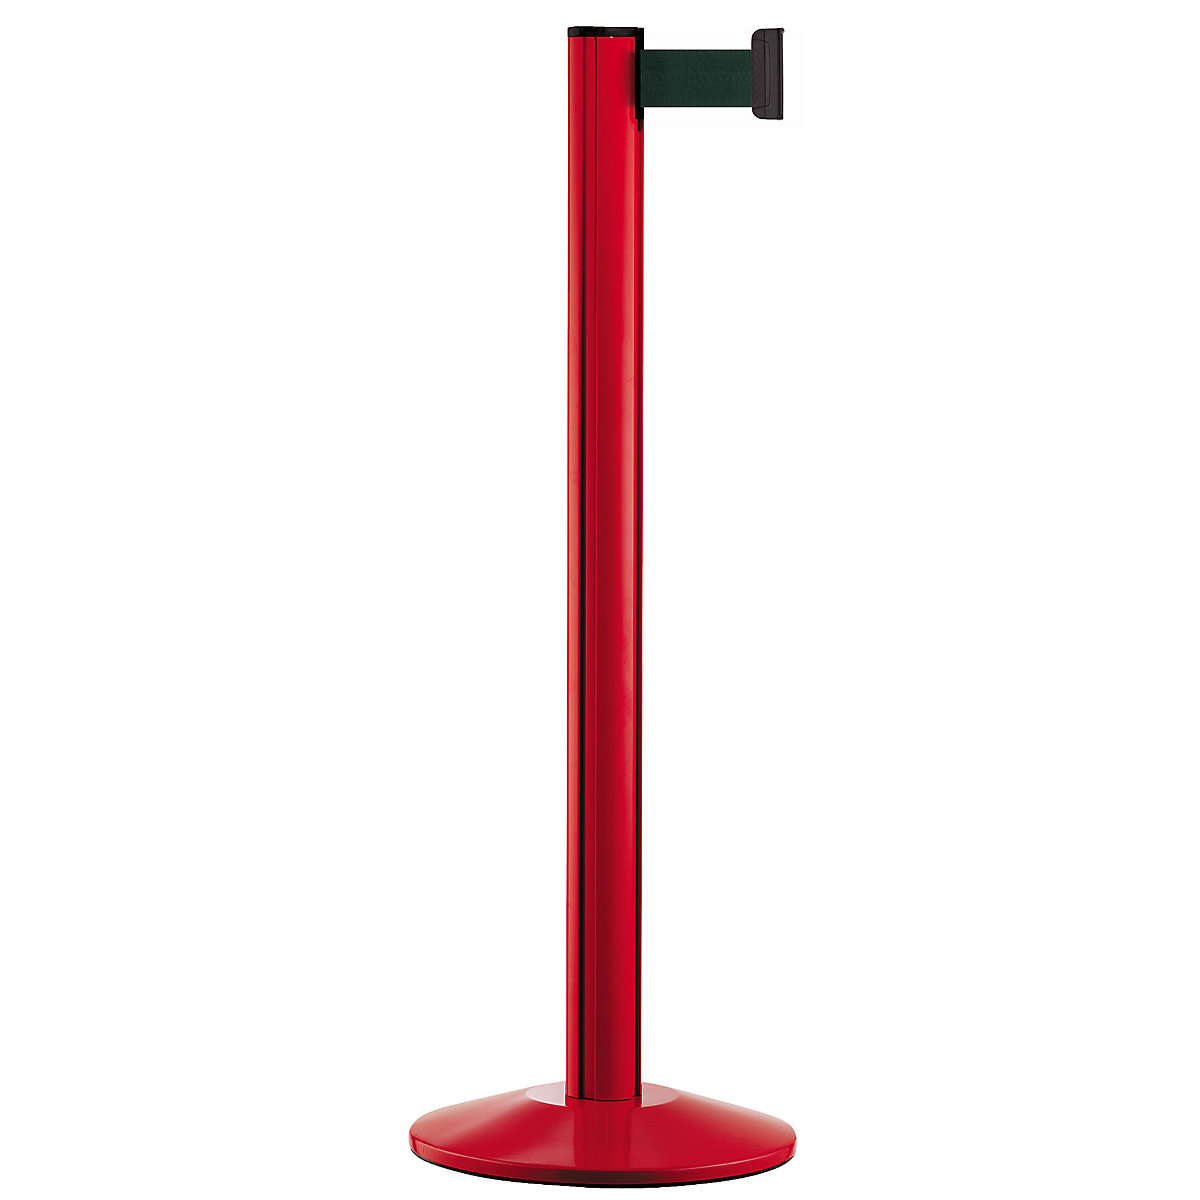 Belt post made of aluminium, post red, extends 2300 mm, belt colour green-5